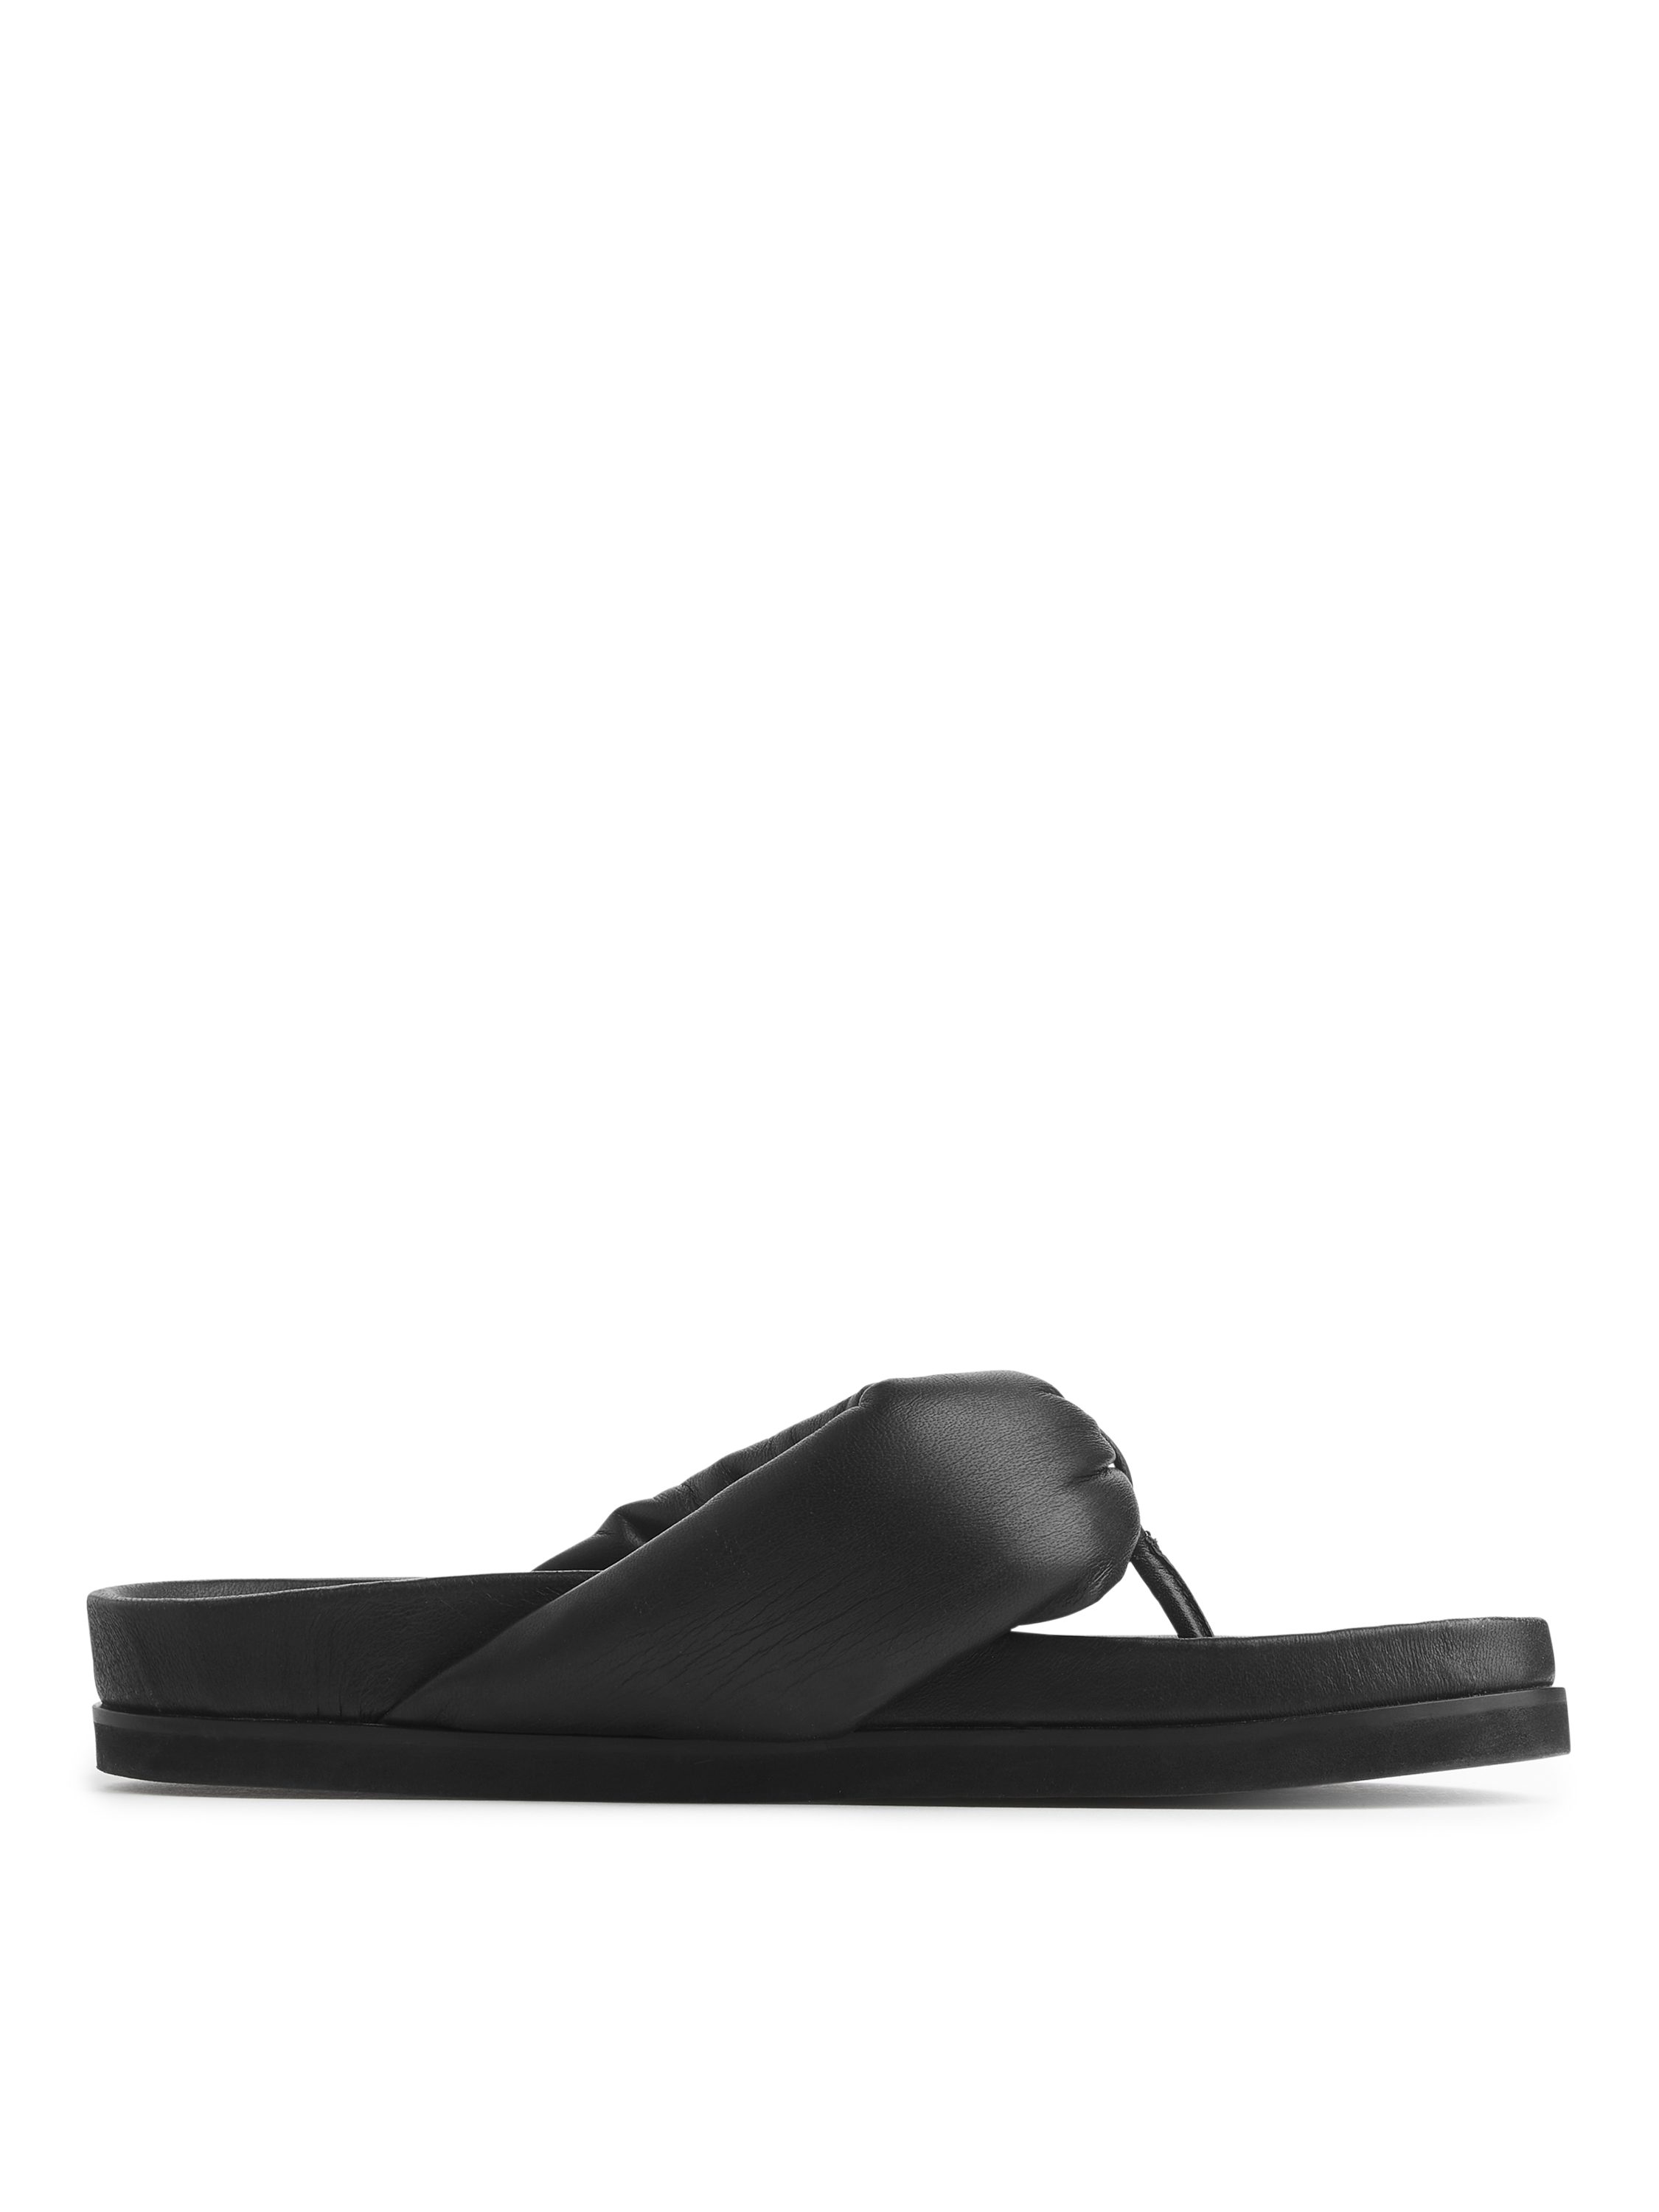 Mens Flip Flop Summer Sandals by MIG Slip ON Thong Sliders